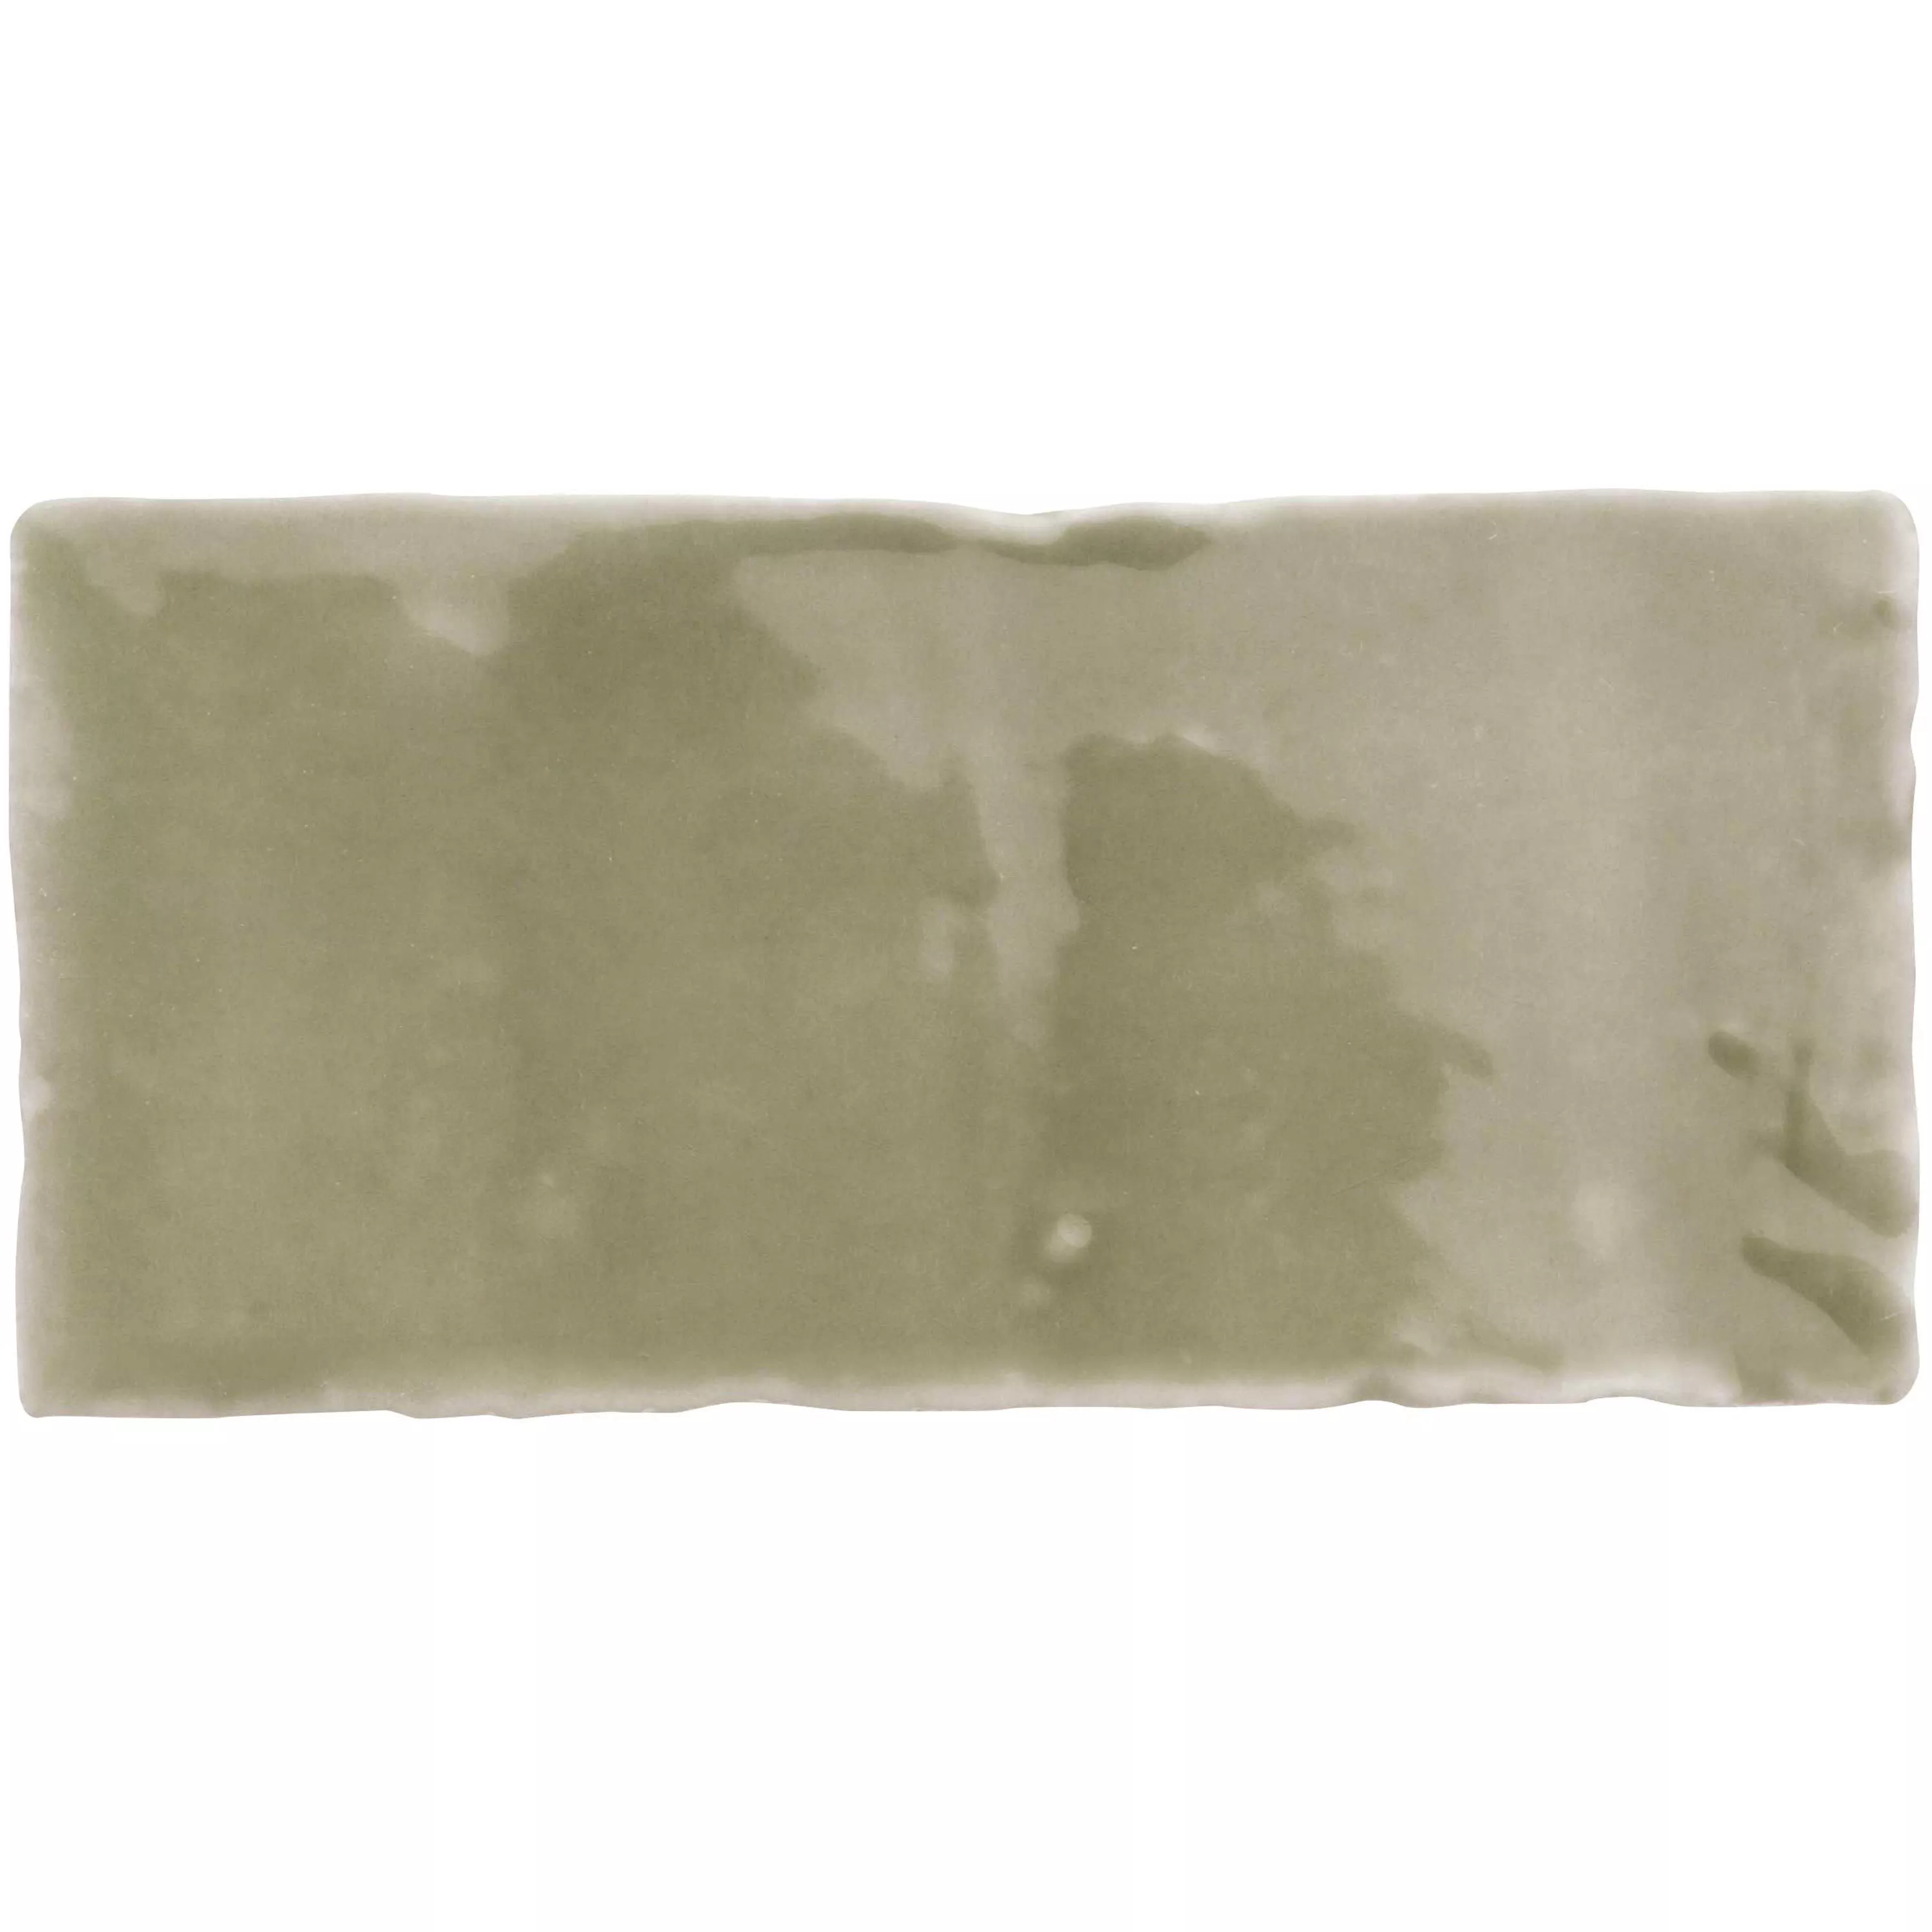 Πλακάκι Tοίχου Algier Xειροποίητο 7,5x15cm Ελαιοπράσινο